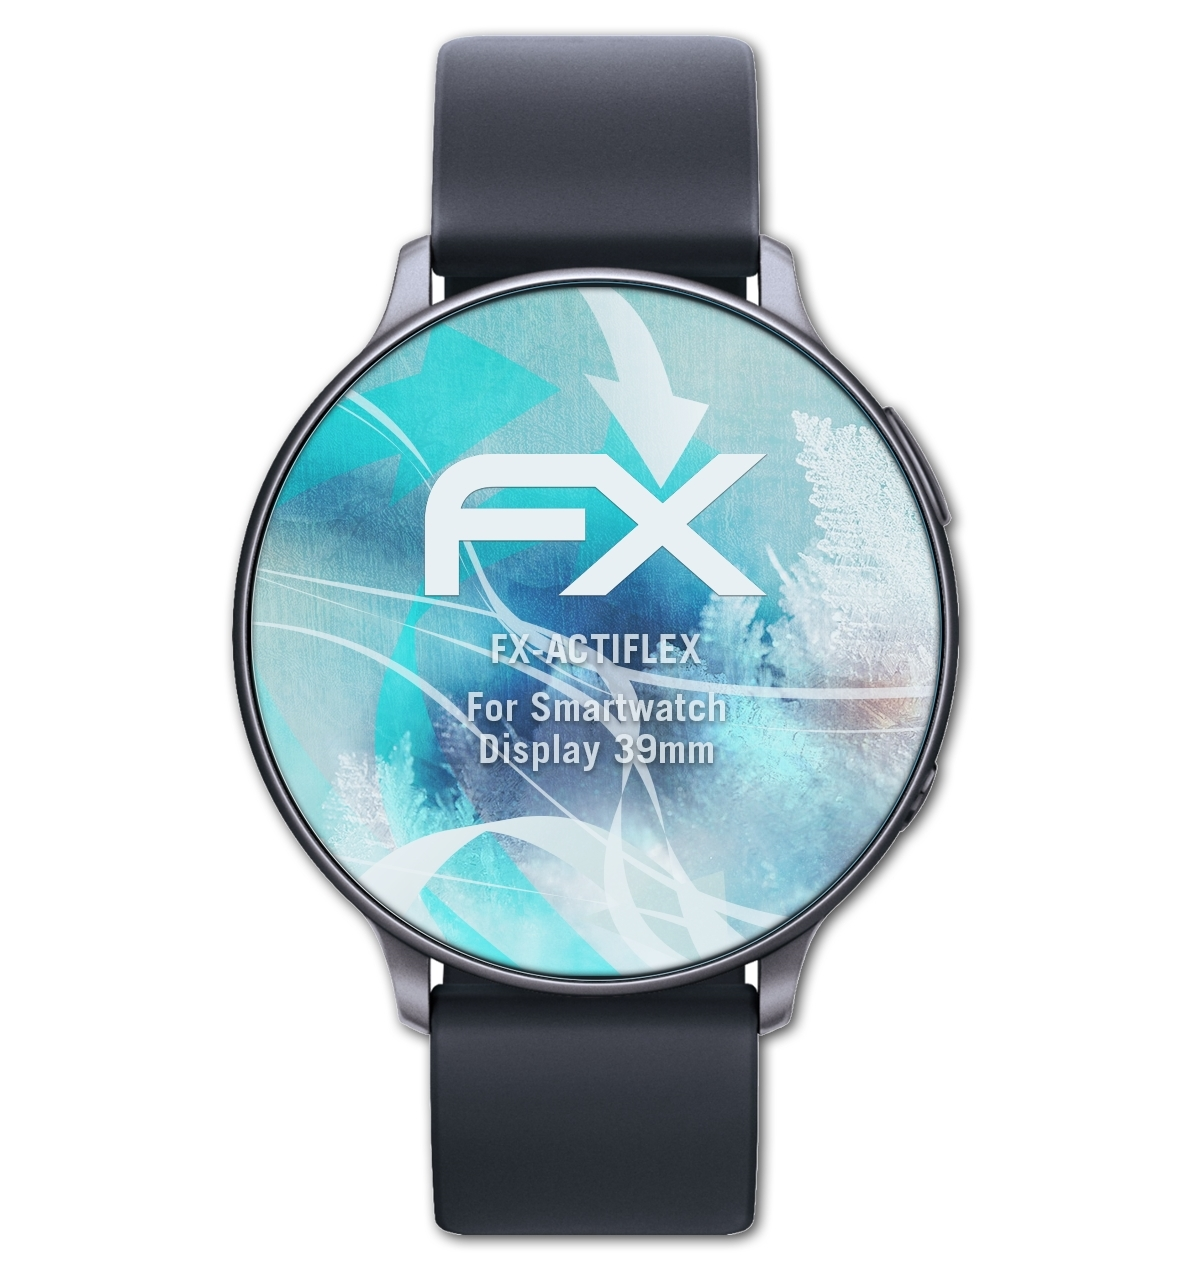 FX-ActiFleX Smartwatch 3x Displayschutz(für Display (39mm)) ATFOLIX